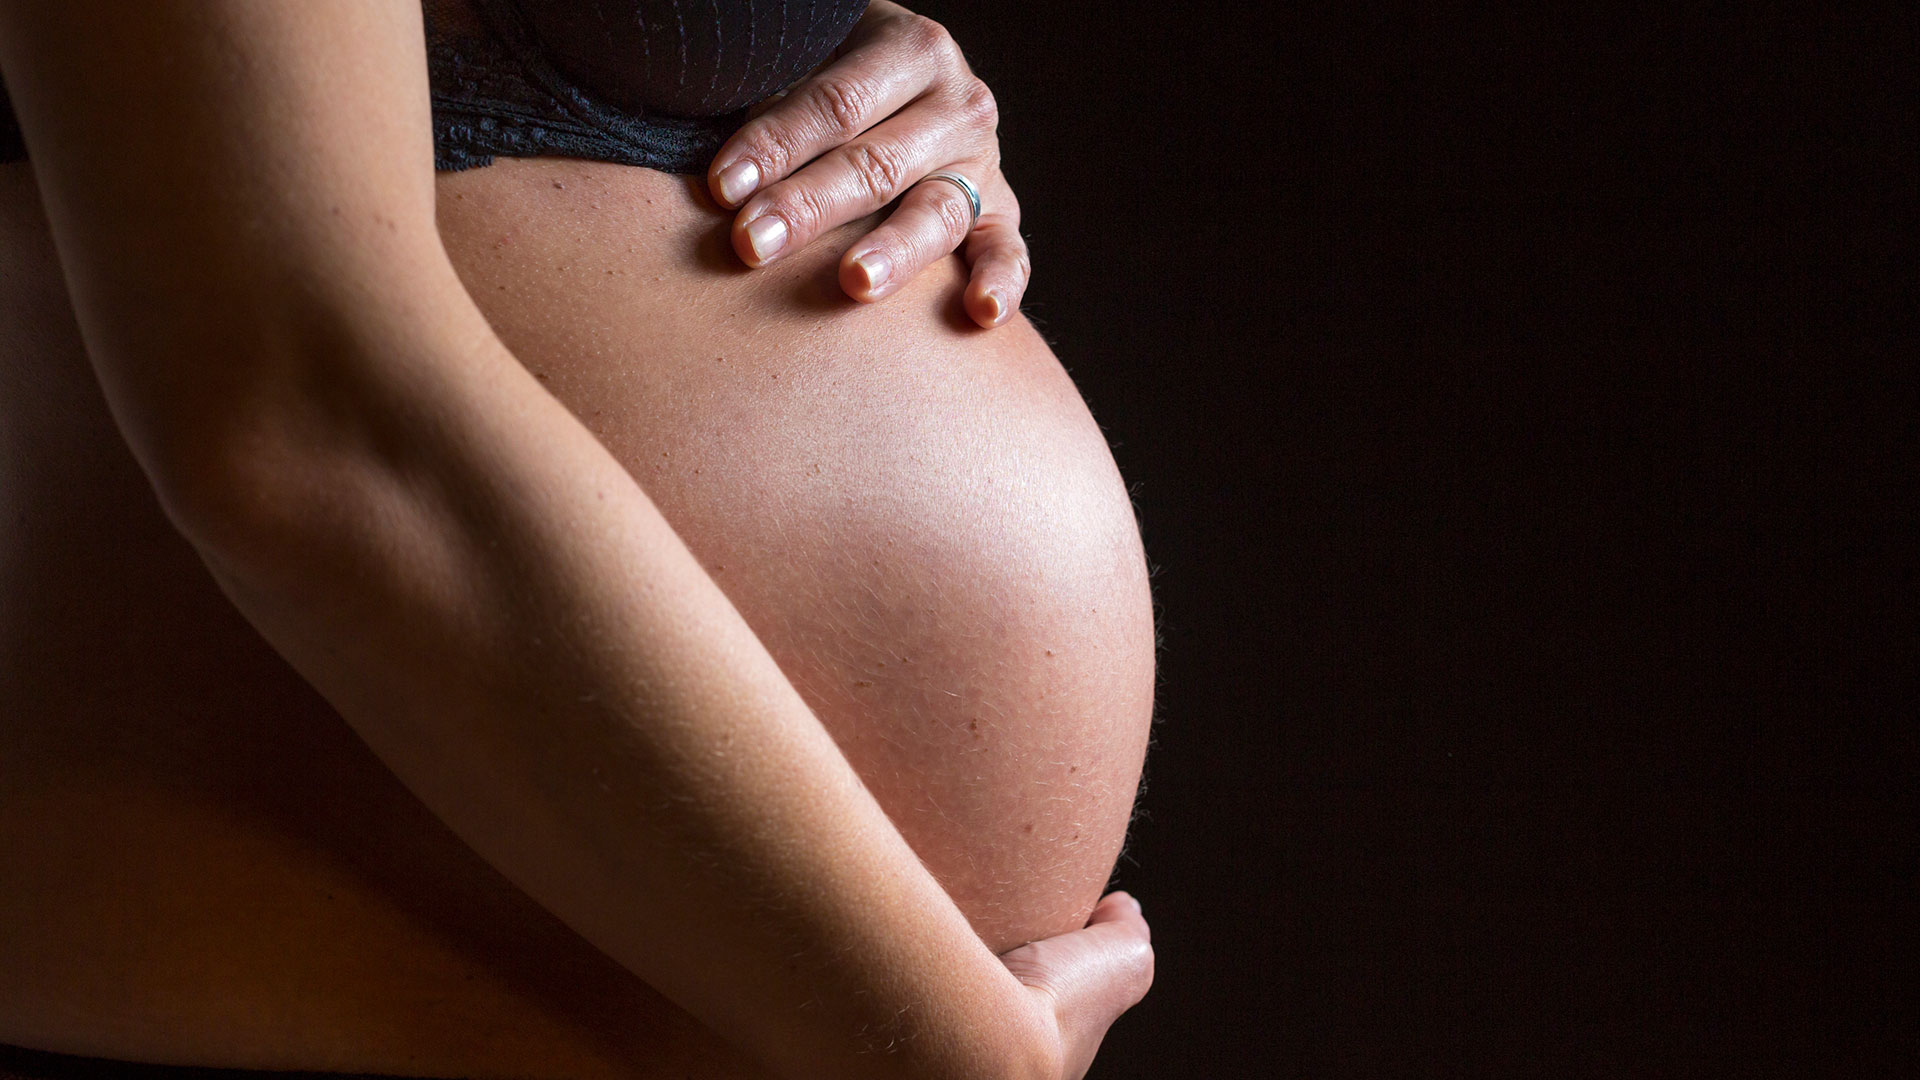 Como encarar as alterações corporais na gravidez preservando autoestima?